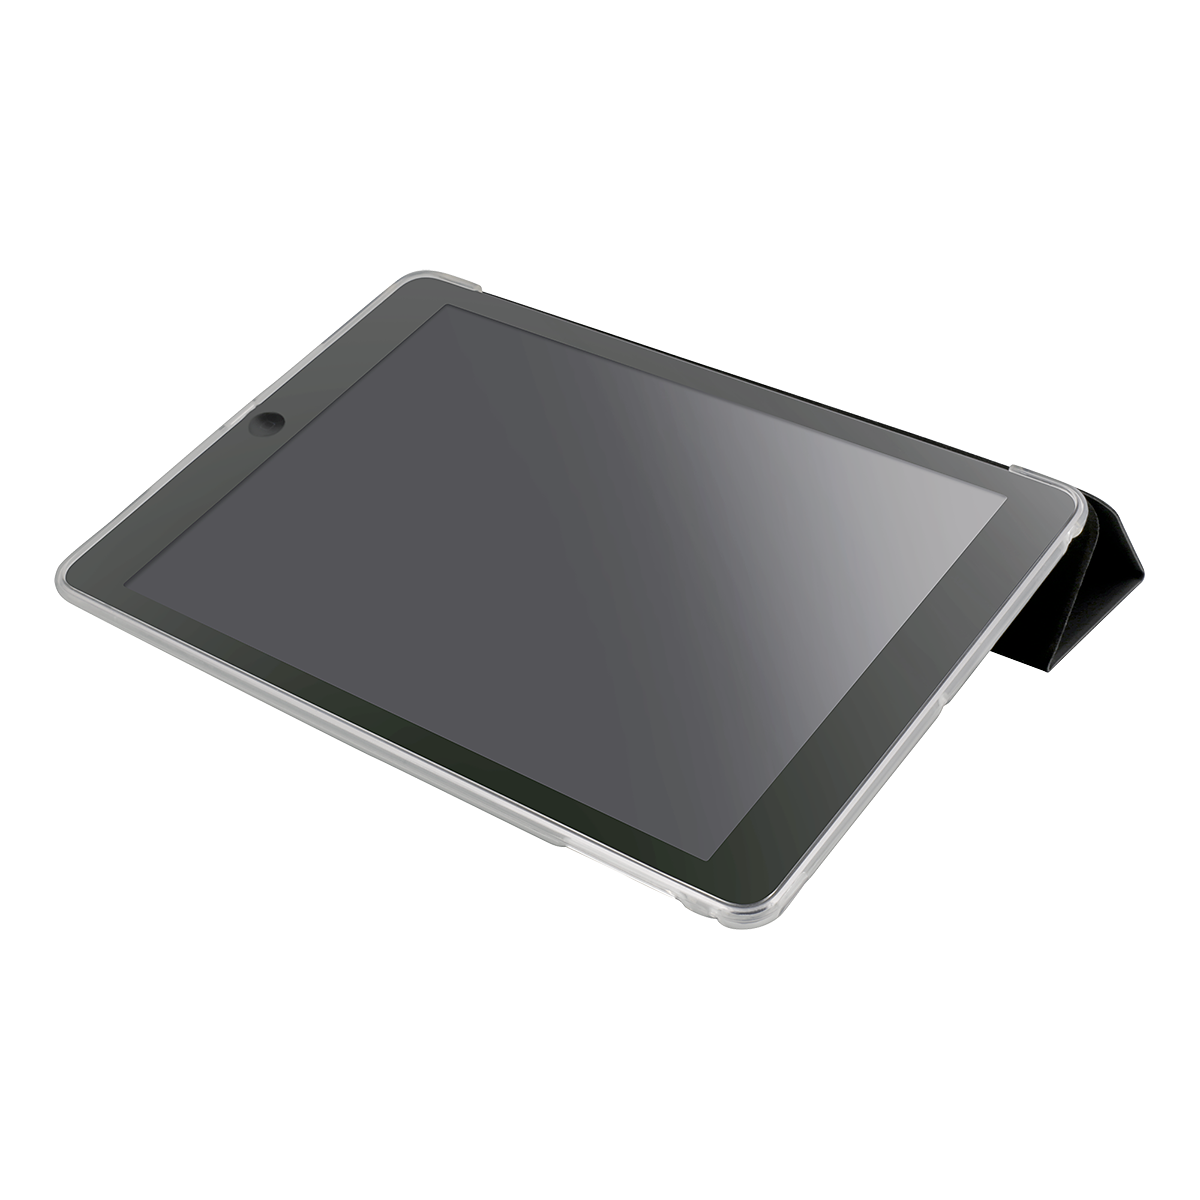 DELTACO fodral för alla 9,7" modeller av iPad, svart